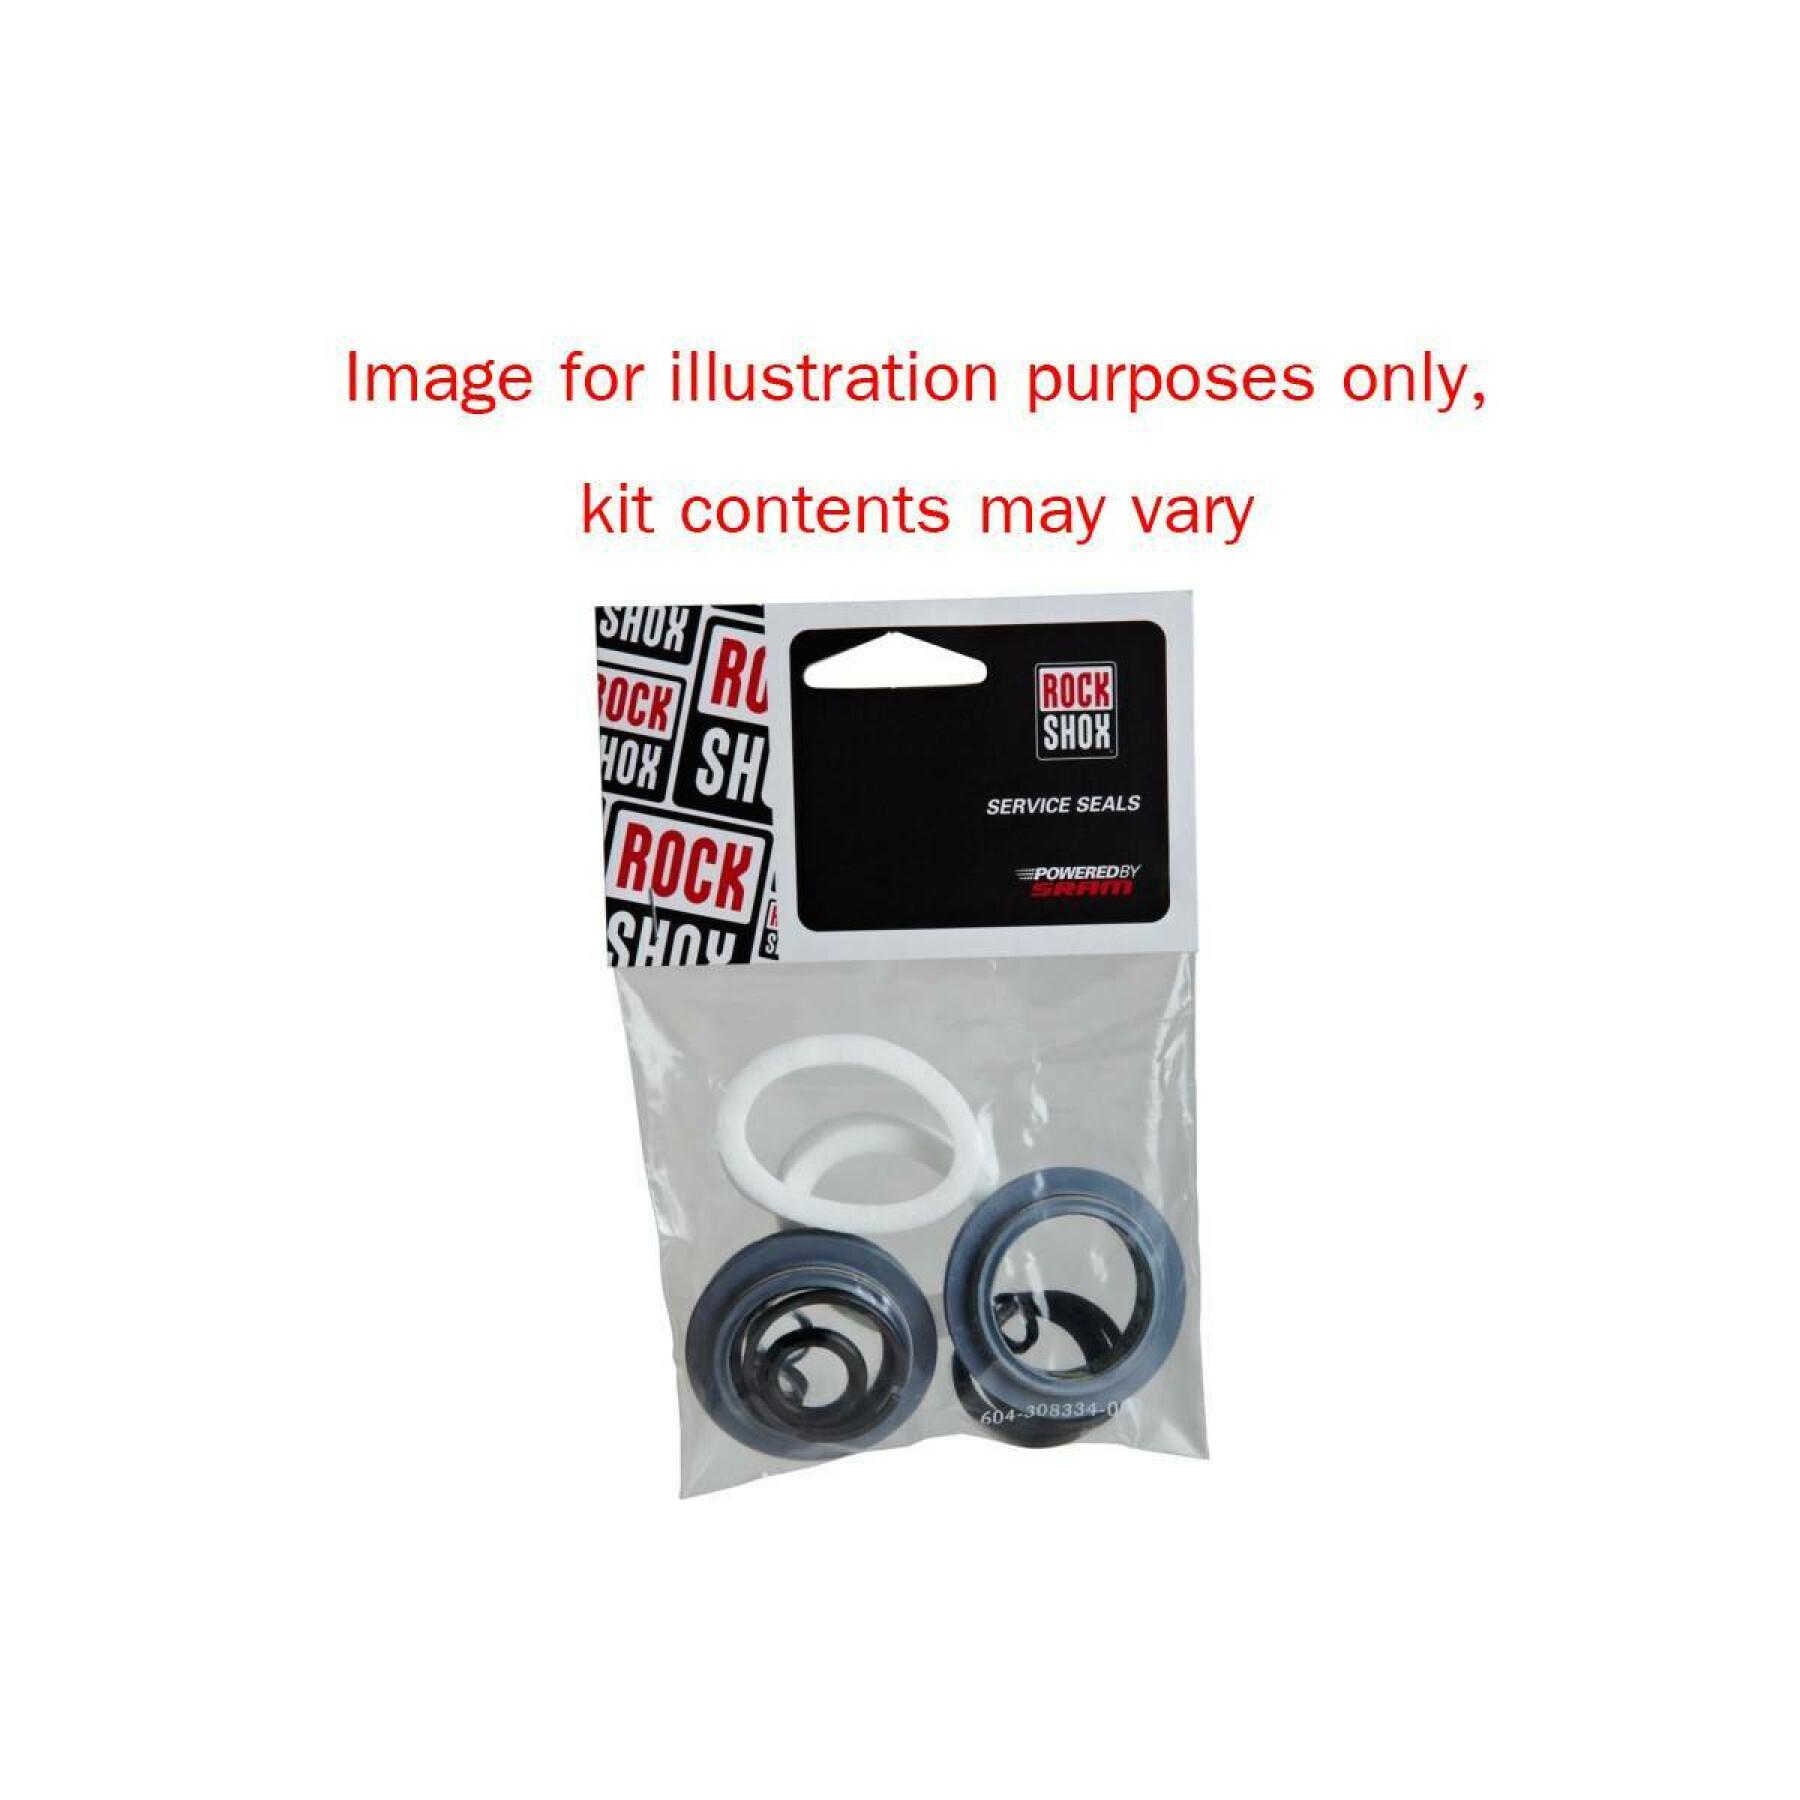 Rear shock absorber seal kit Rockshox Shock 50h Ario/Mon 08-10